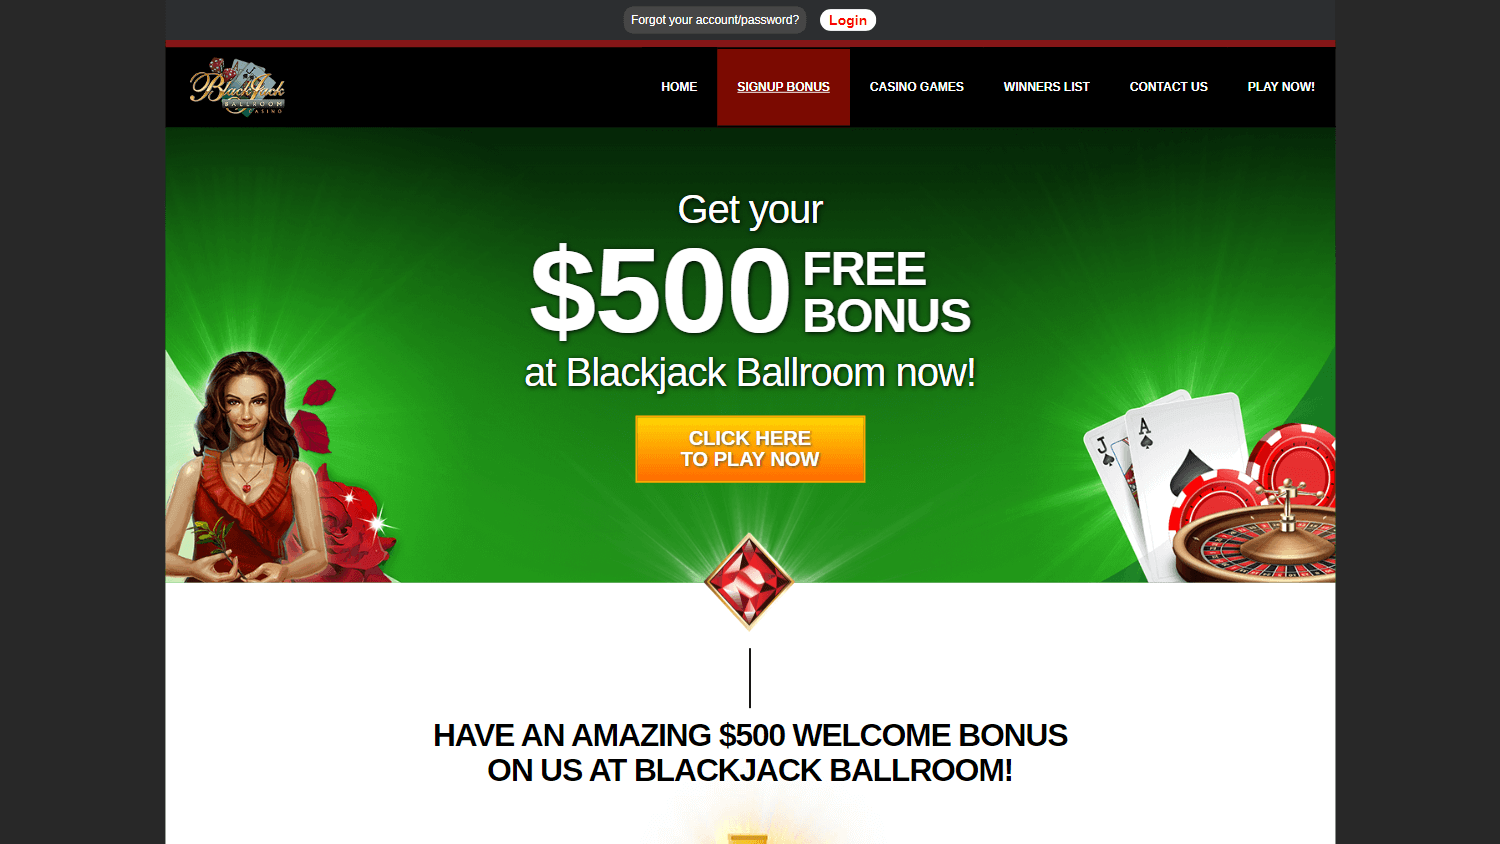 blackjack_ballroom_casino_promotions_desktop